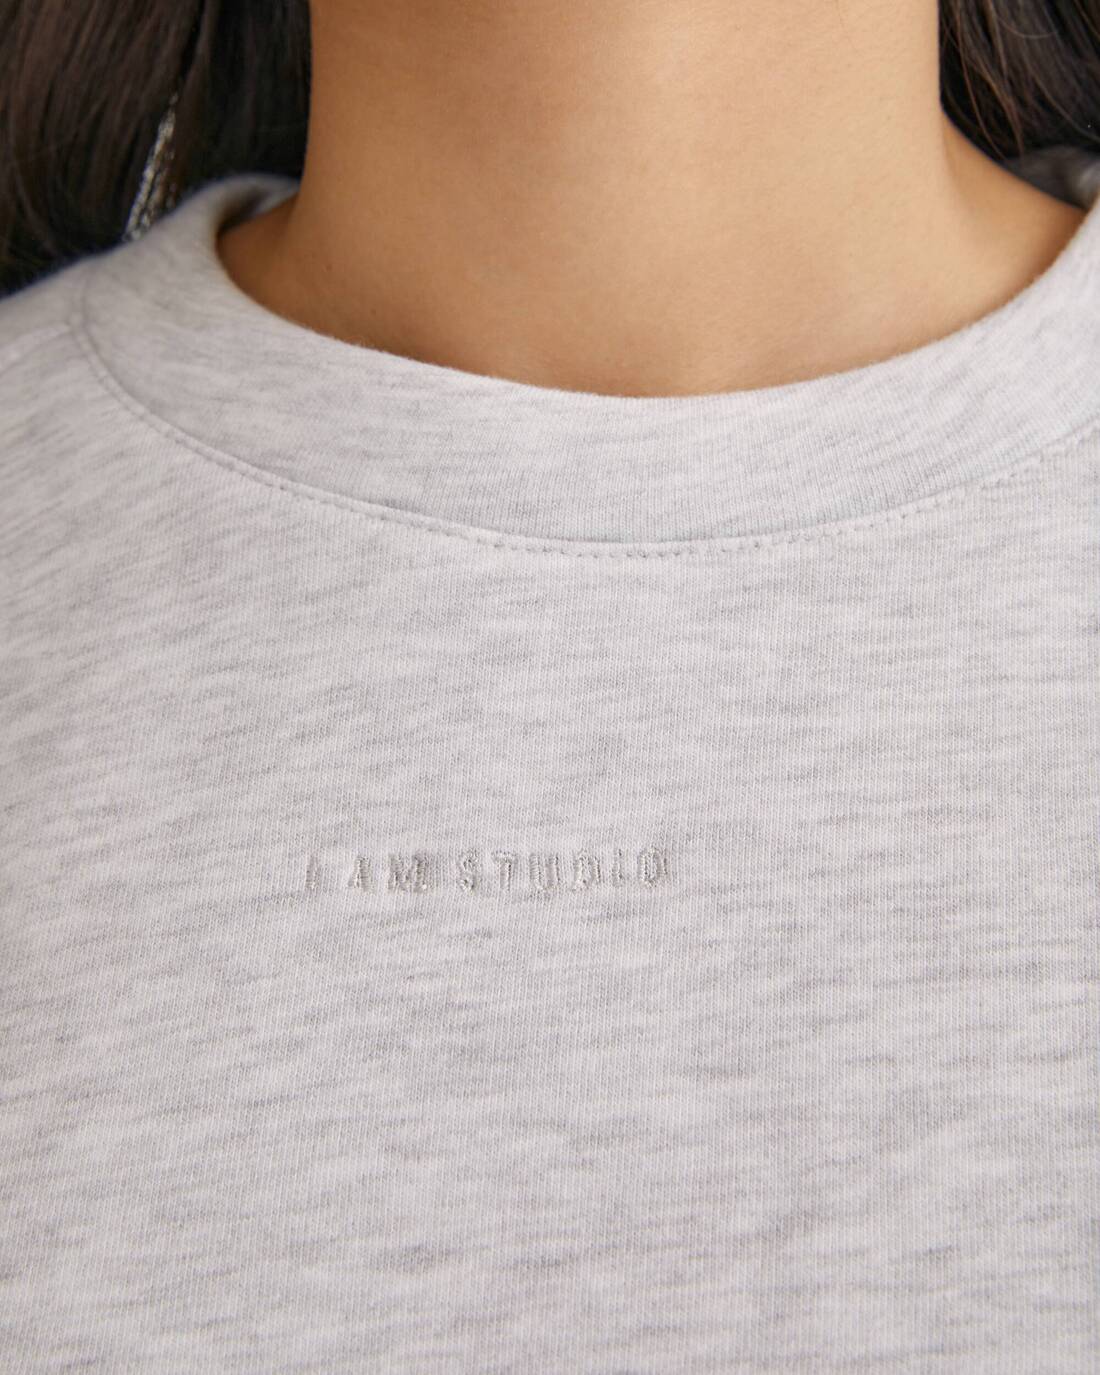 Sweatshirt with logo 